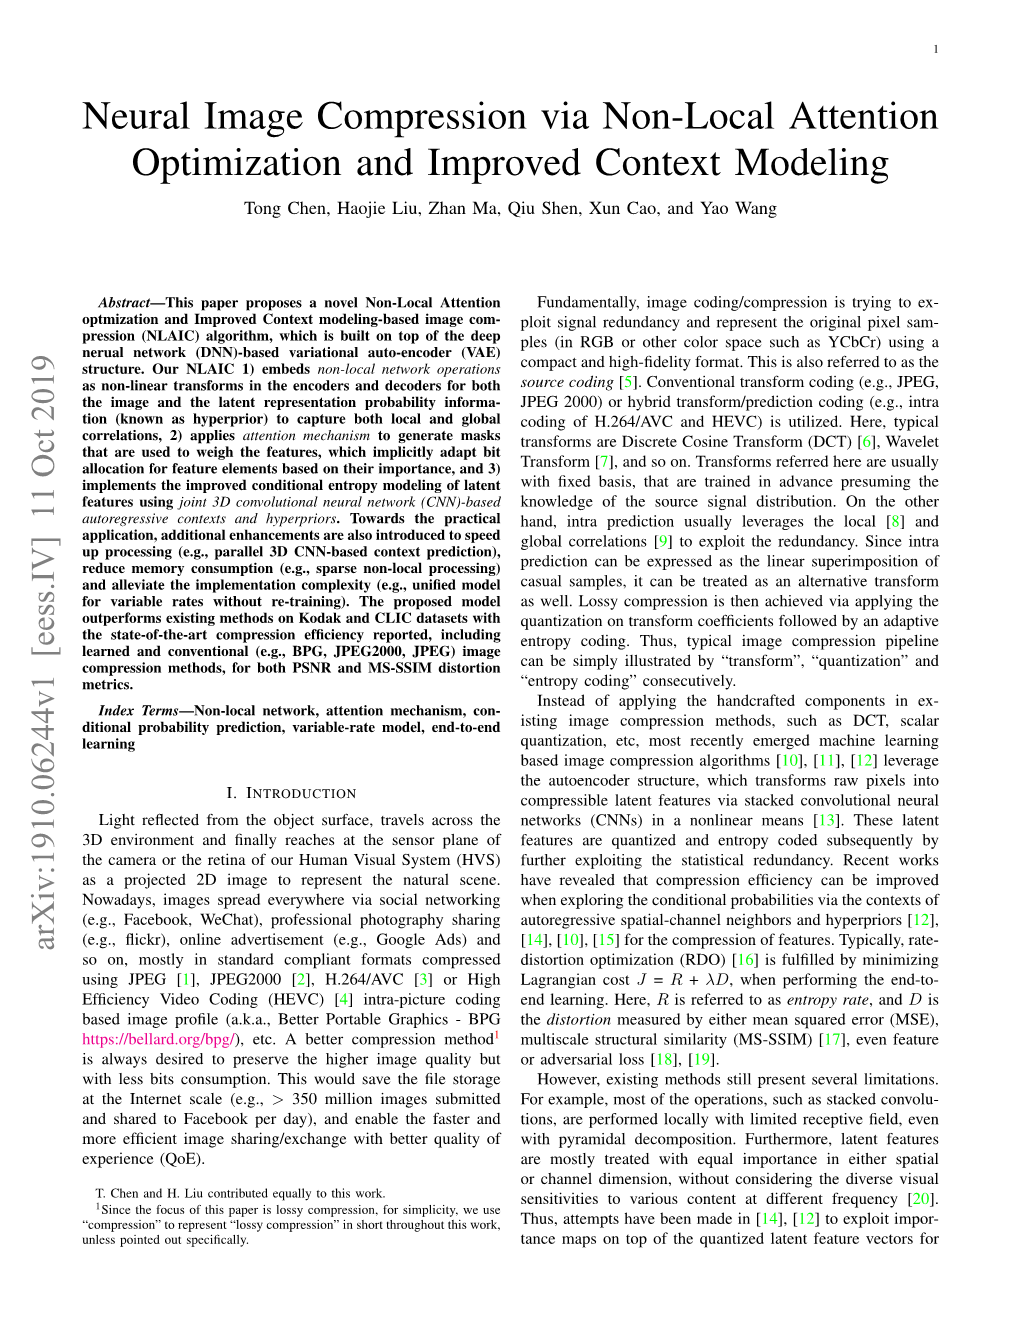 Neural Image Compression Via Non-Local Attention Optimization and Improved Context Modeling Tong Chen, Haojie Liu, Zhan Ma, Qiu Shen, Xun Cao, and Yao Wang